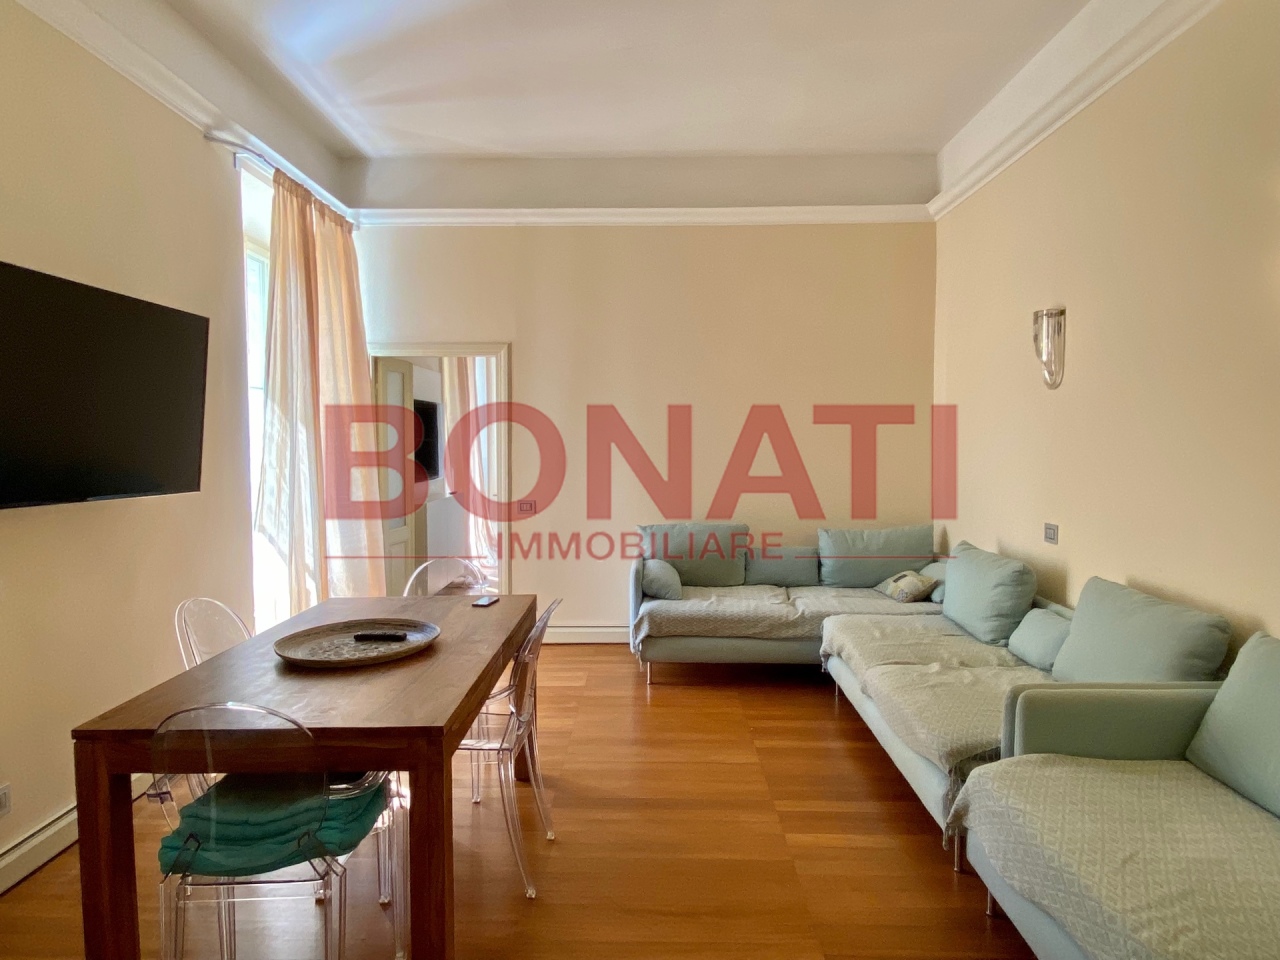 Appartamento in vendita a La Spezia, 3 locali, prezzo € 205.000 | PortaleAgenzieImmobiliari.it